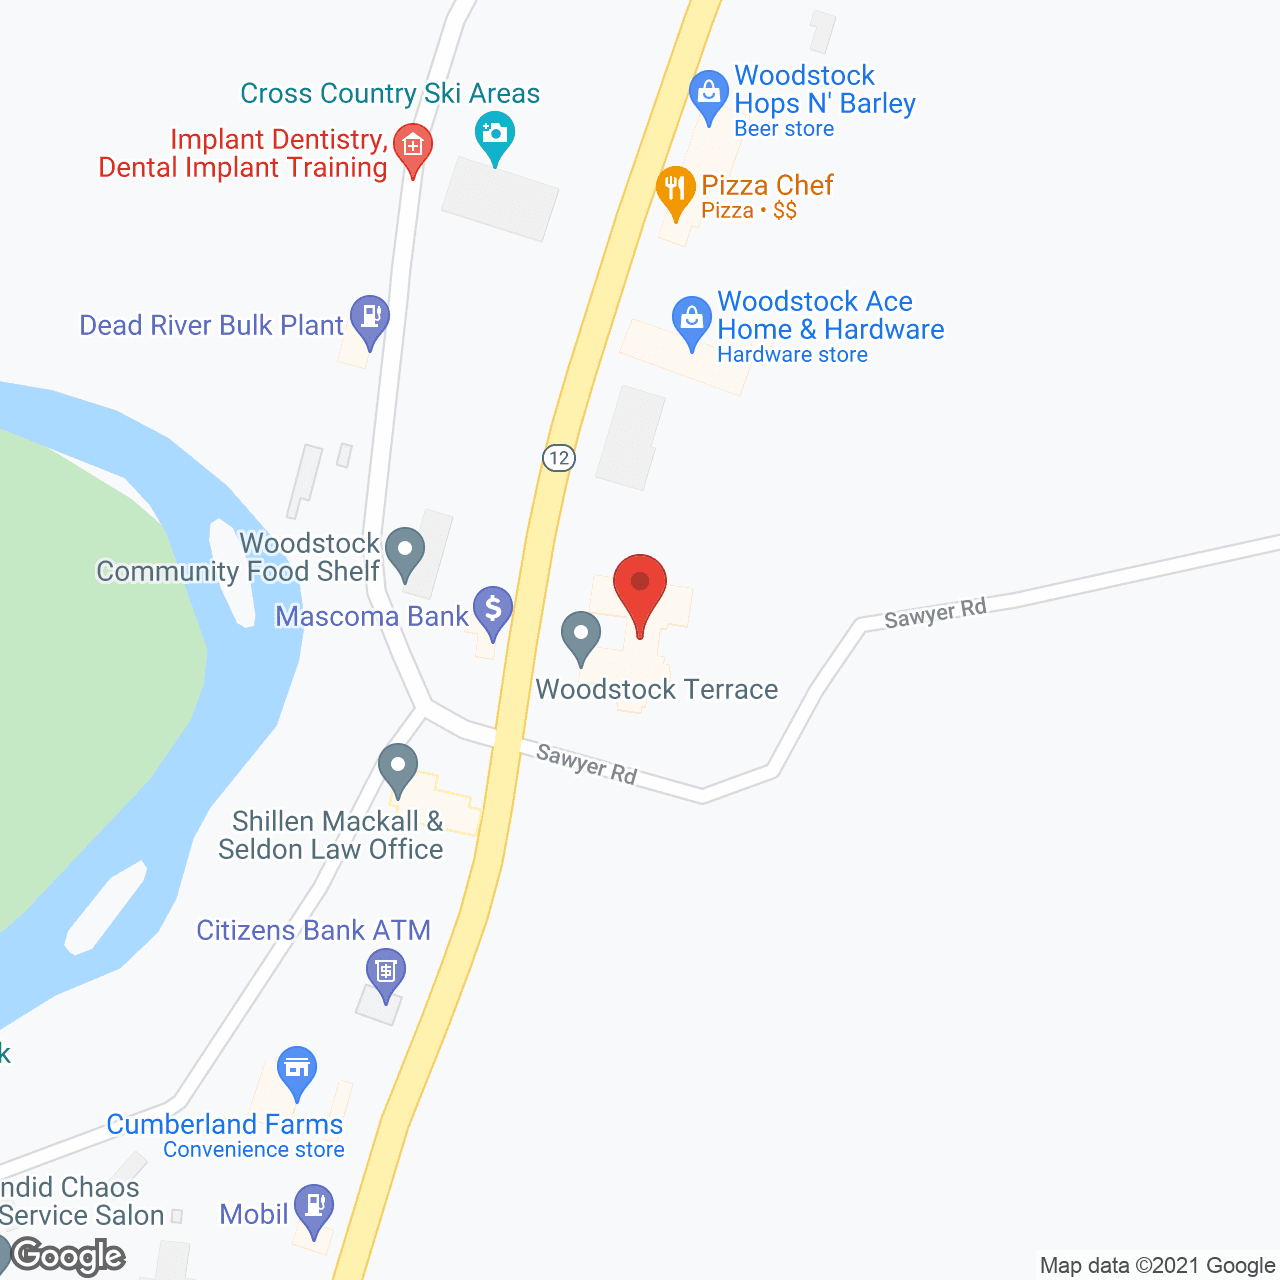 Woodstock Terrace in google map